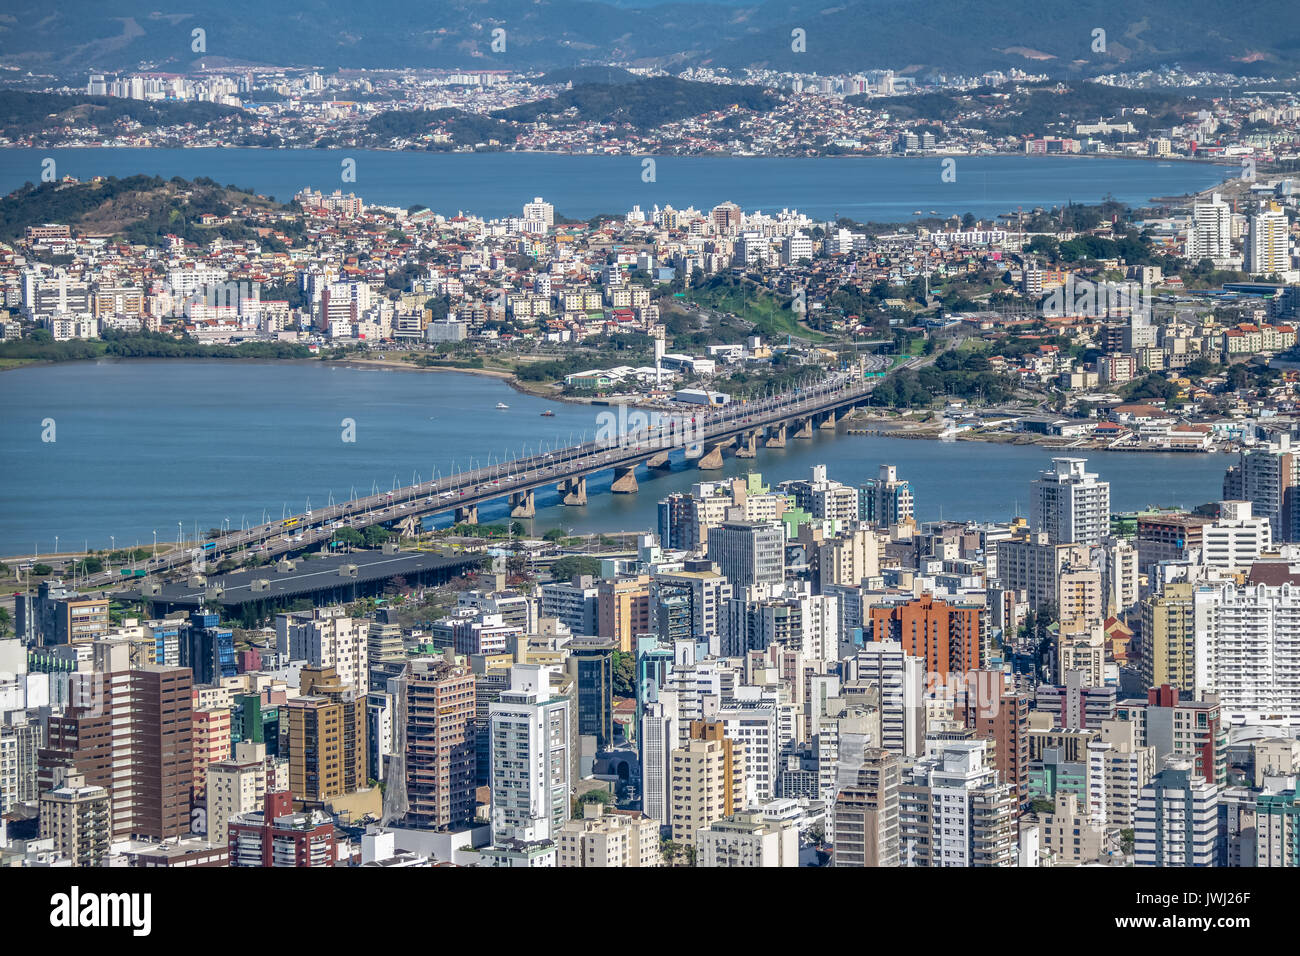 Vue aérienne du centre ville de Florianopolis Ville et Pedro Ivo Campos Bridge - Florianopolis, Santa Catarina, Brazia Banque D'Images